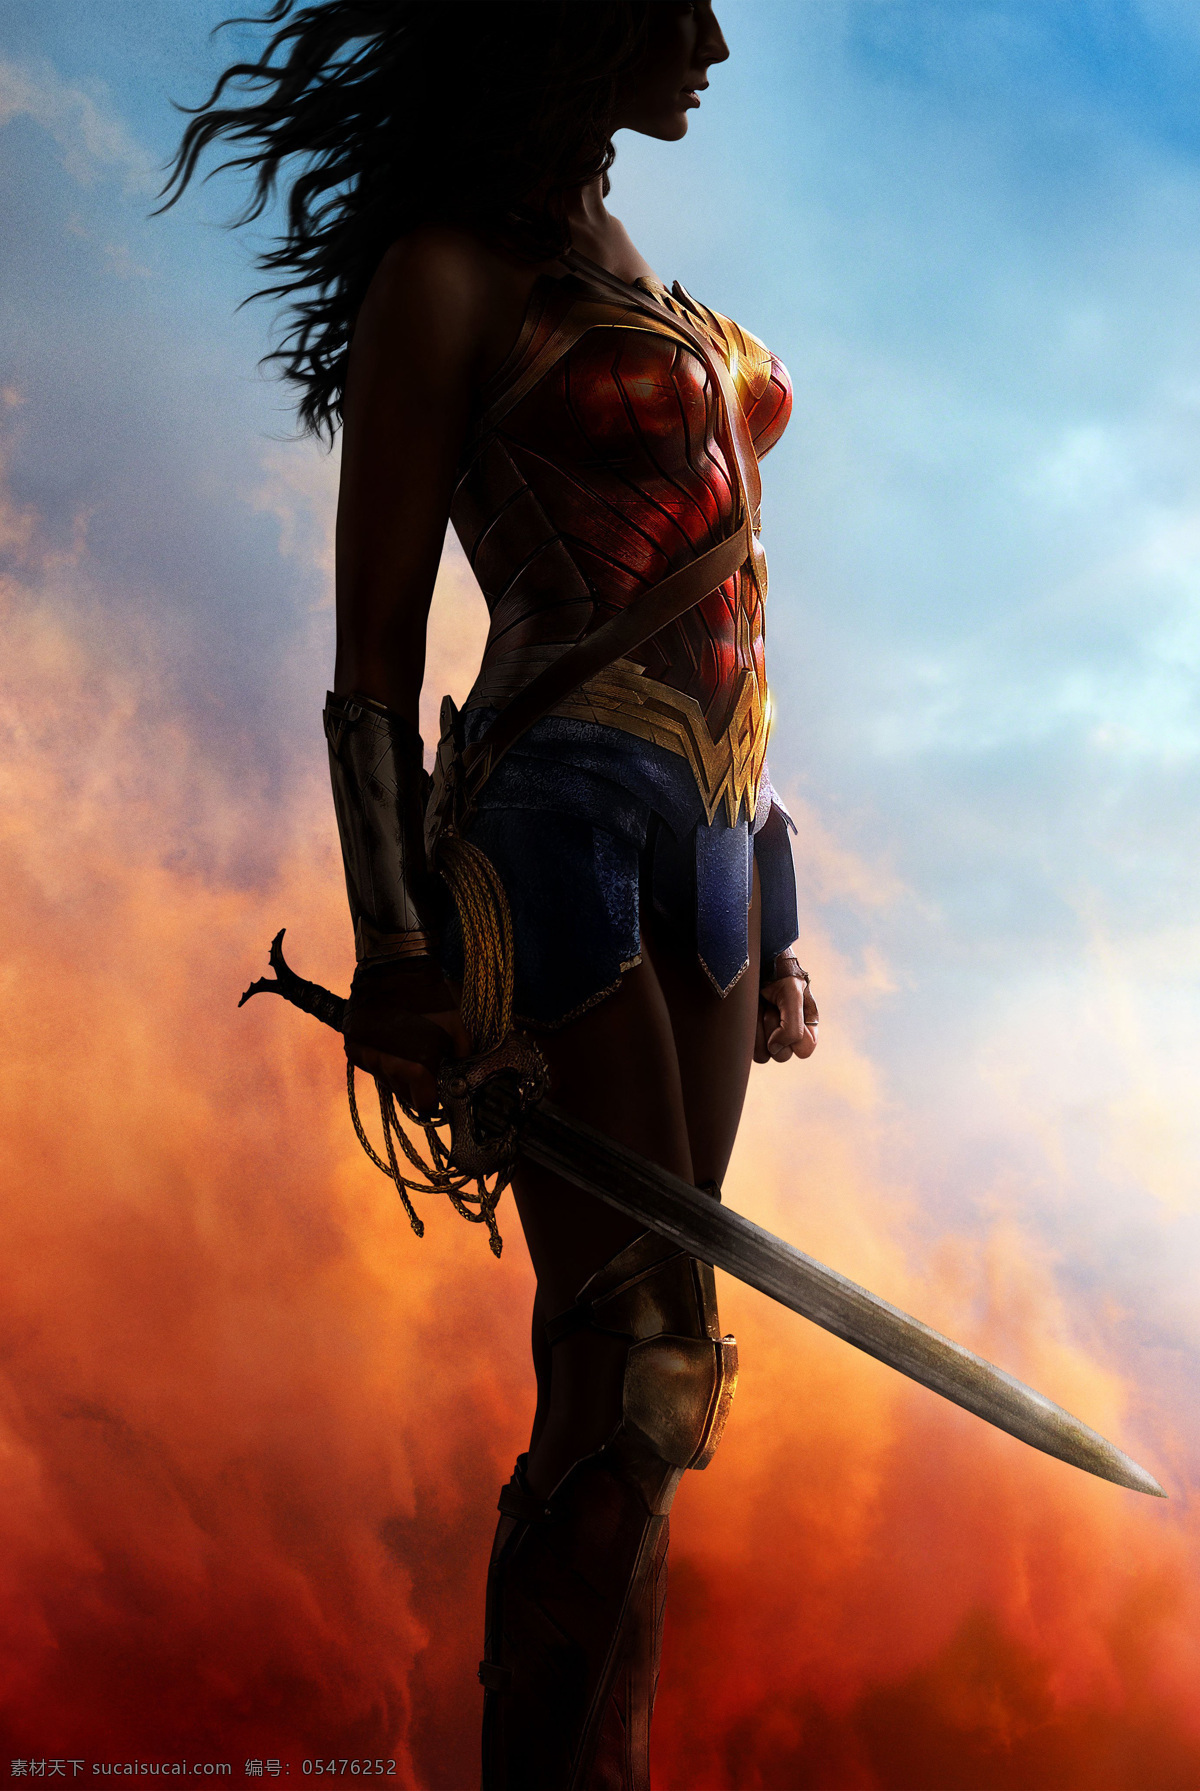 神奇女侠 戴安娜 盖尔加朵 英雄 超级英雄 战士 守护者 天堂岛 dc漫画 漫画电影 dcue 动漫动画 动漫人物